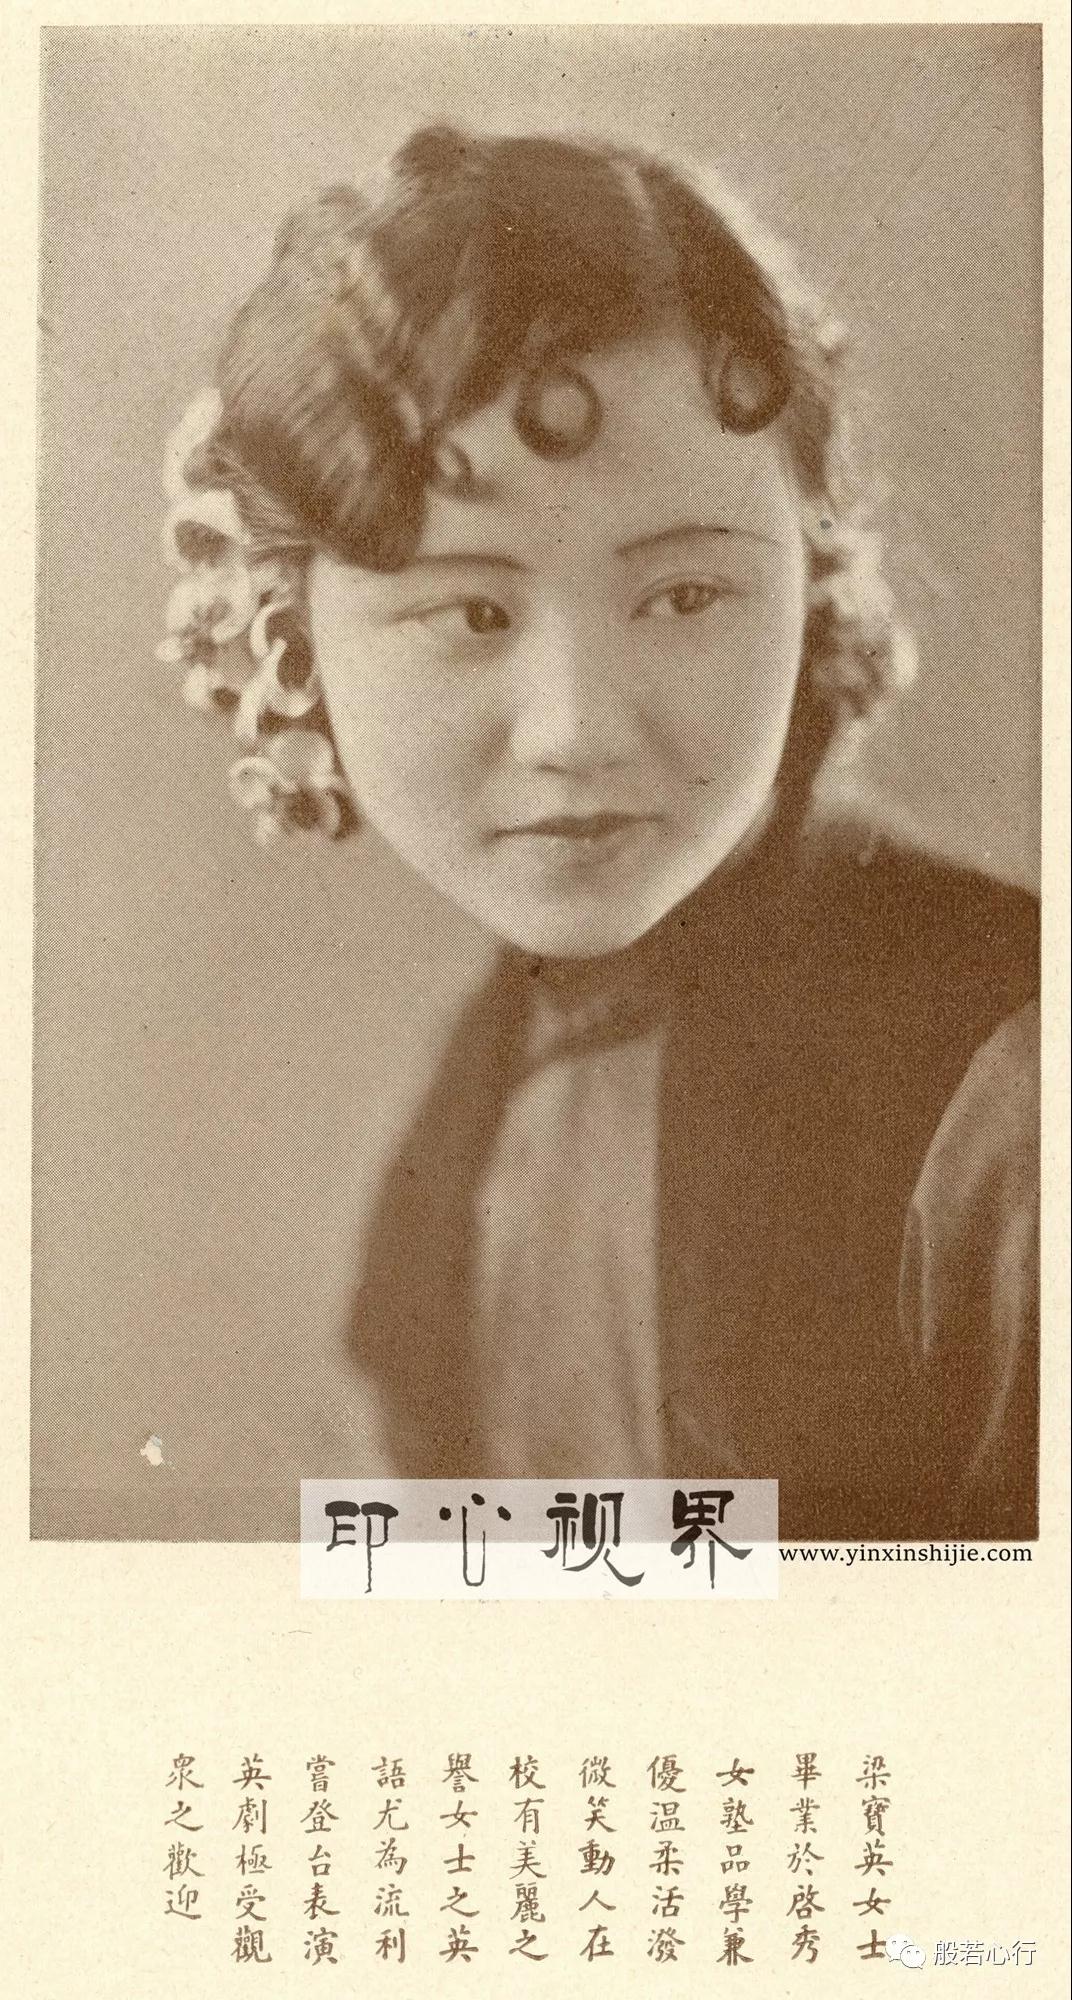 表演英剧之梁宝英女士--1930年《闺秀影集》